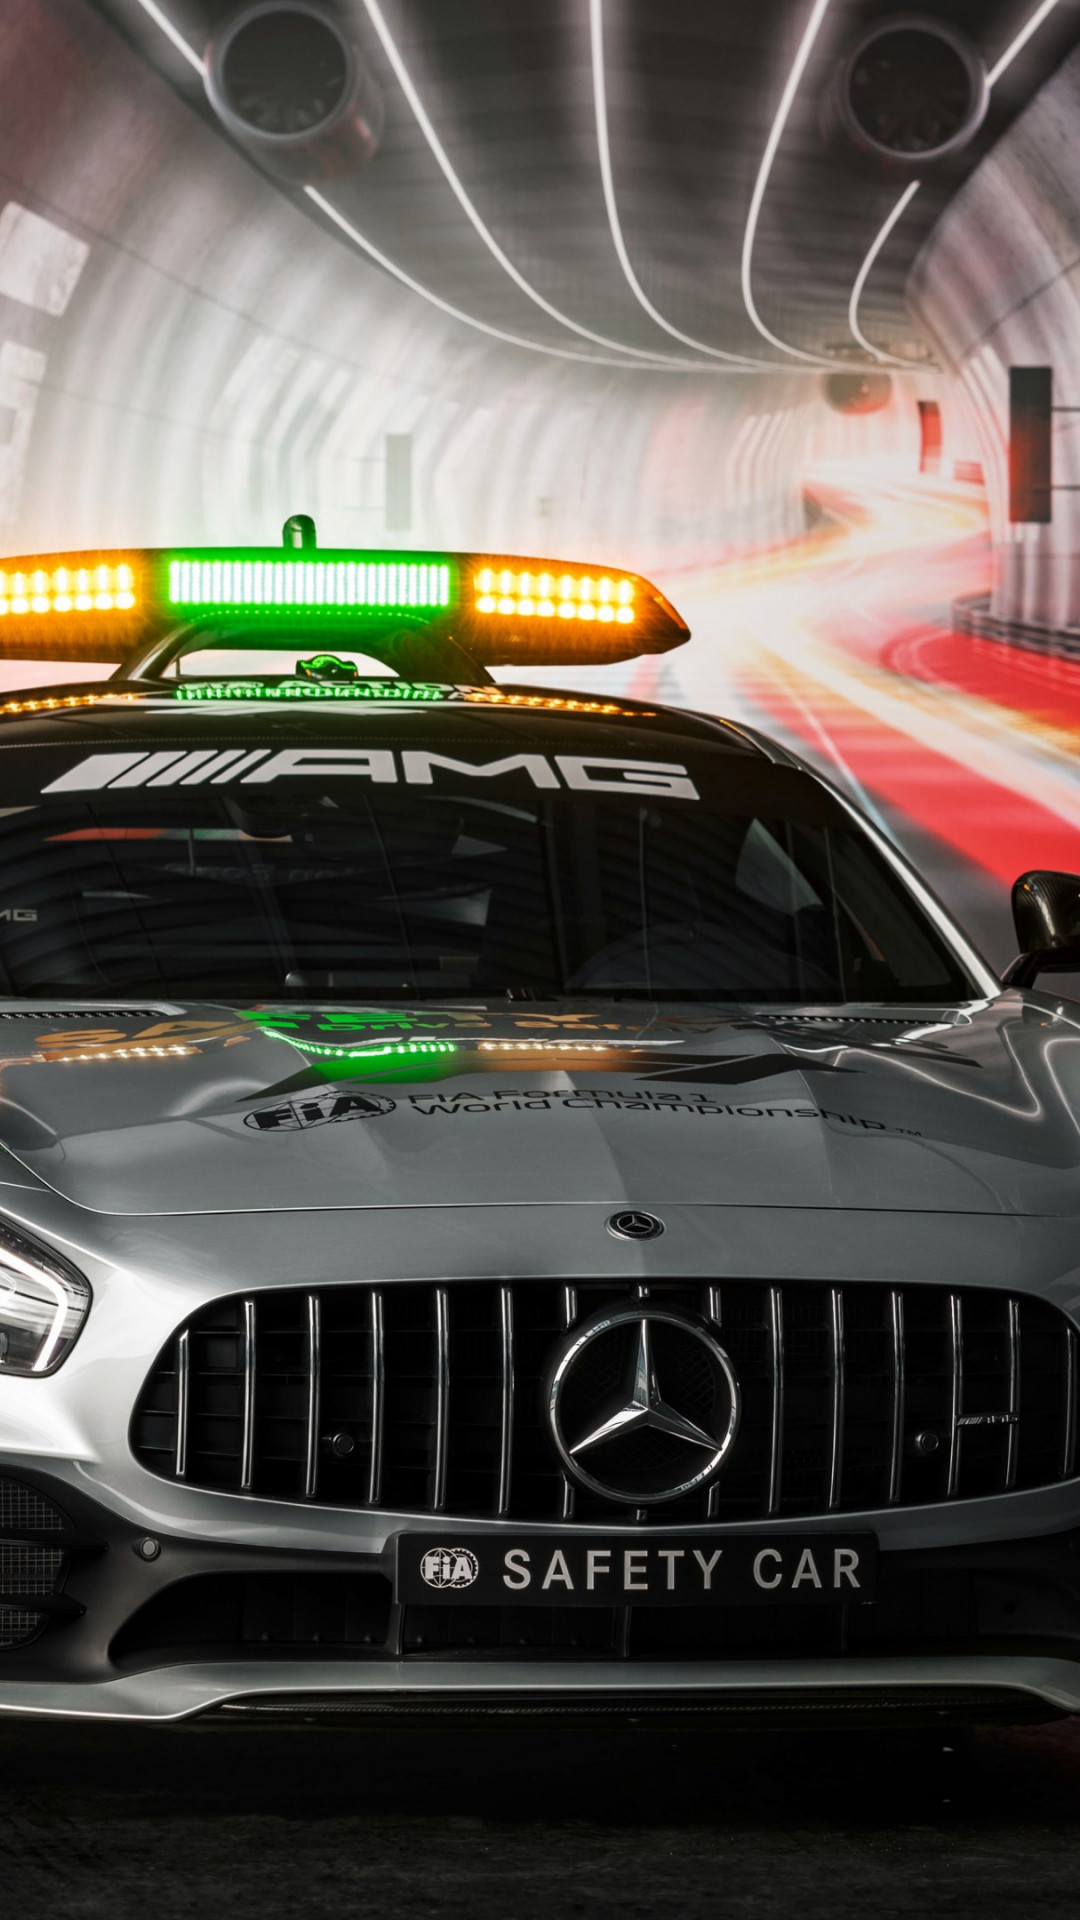 Mercedes AMG GT R F1 safety car wallpaper 1080x1920